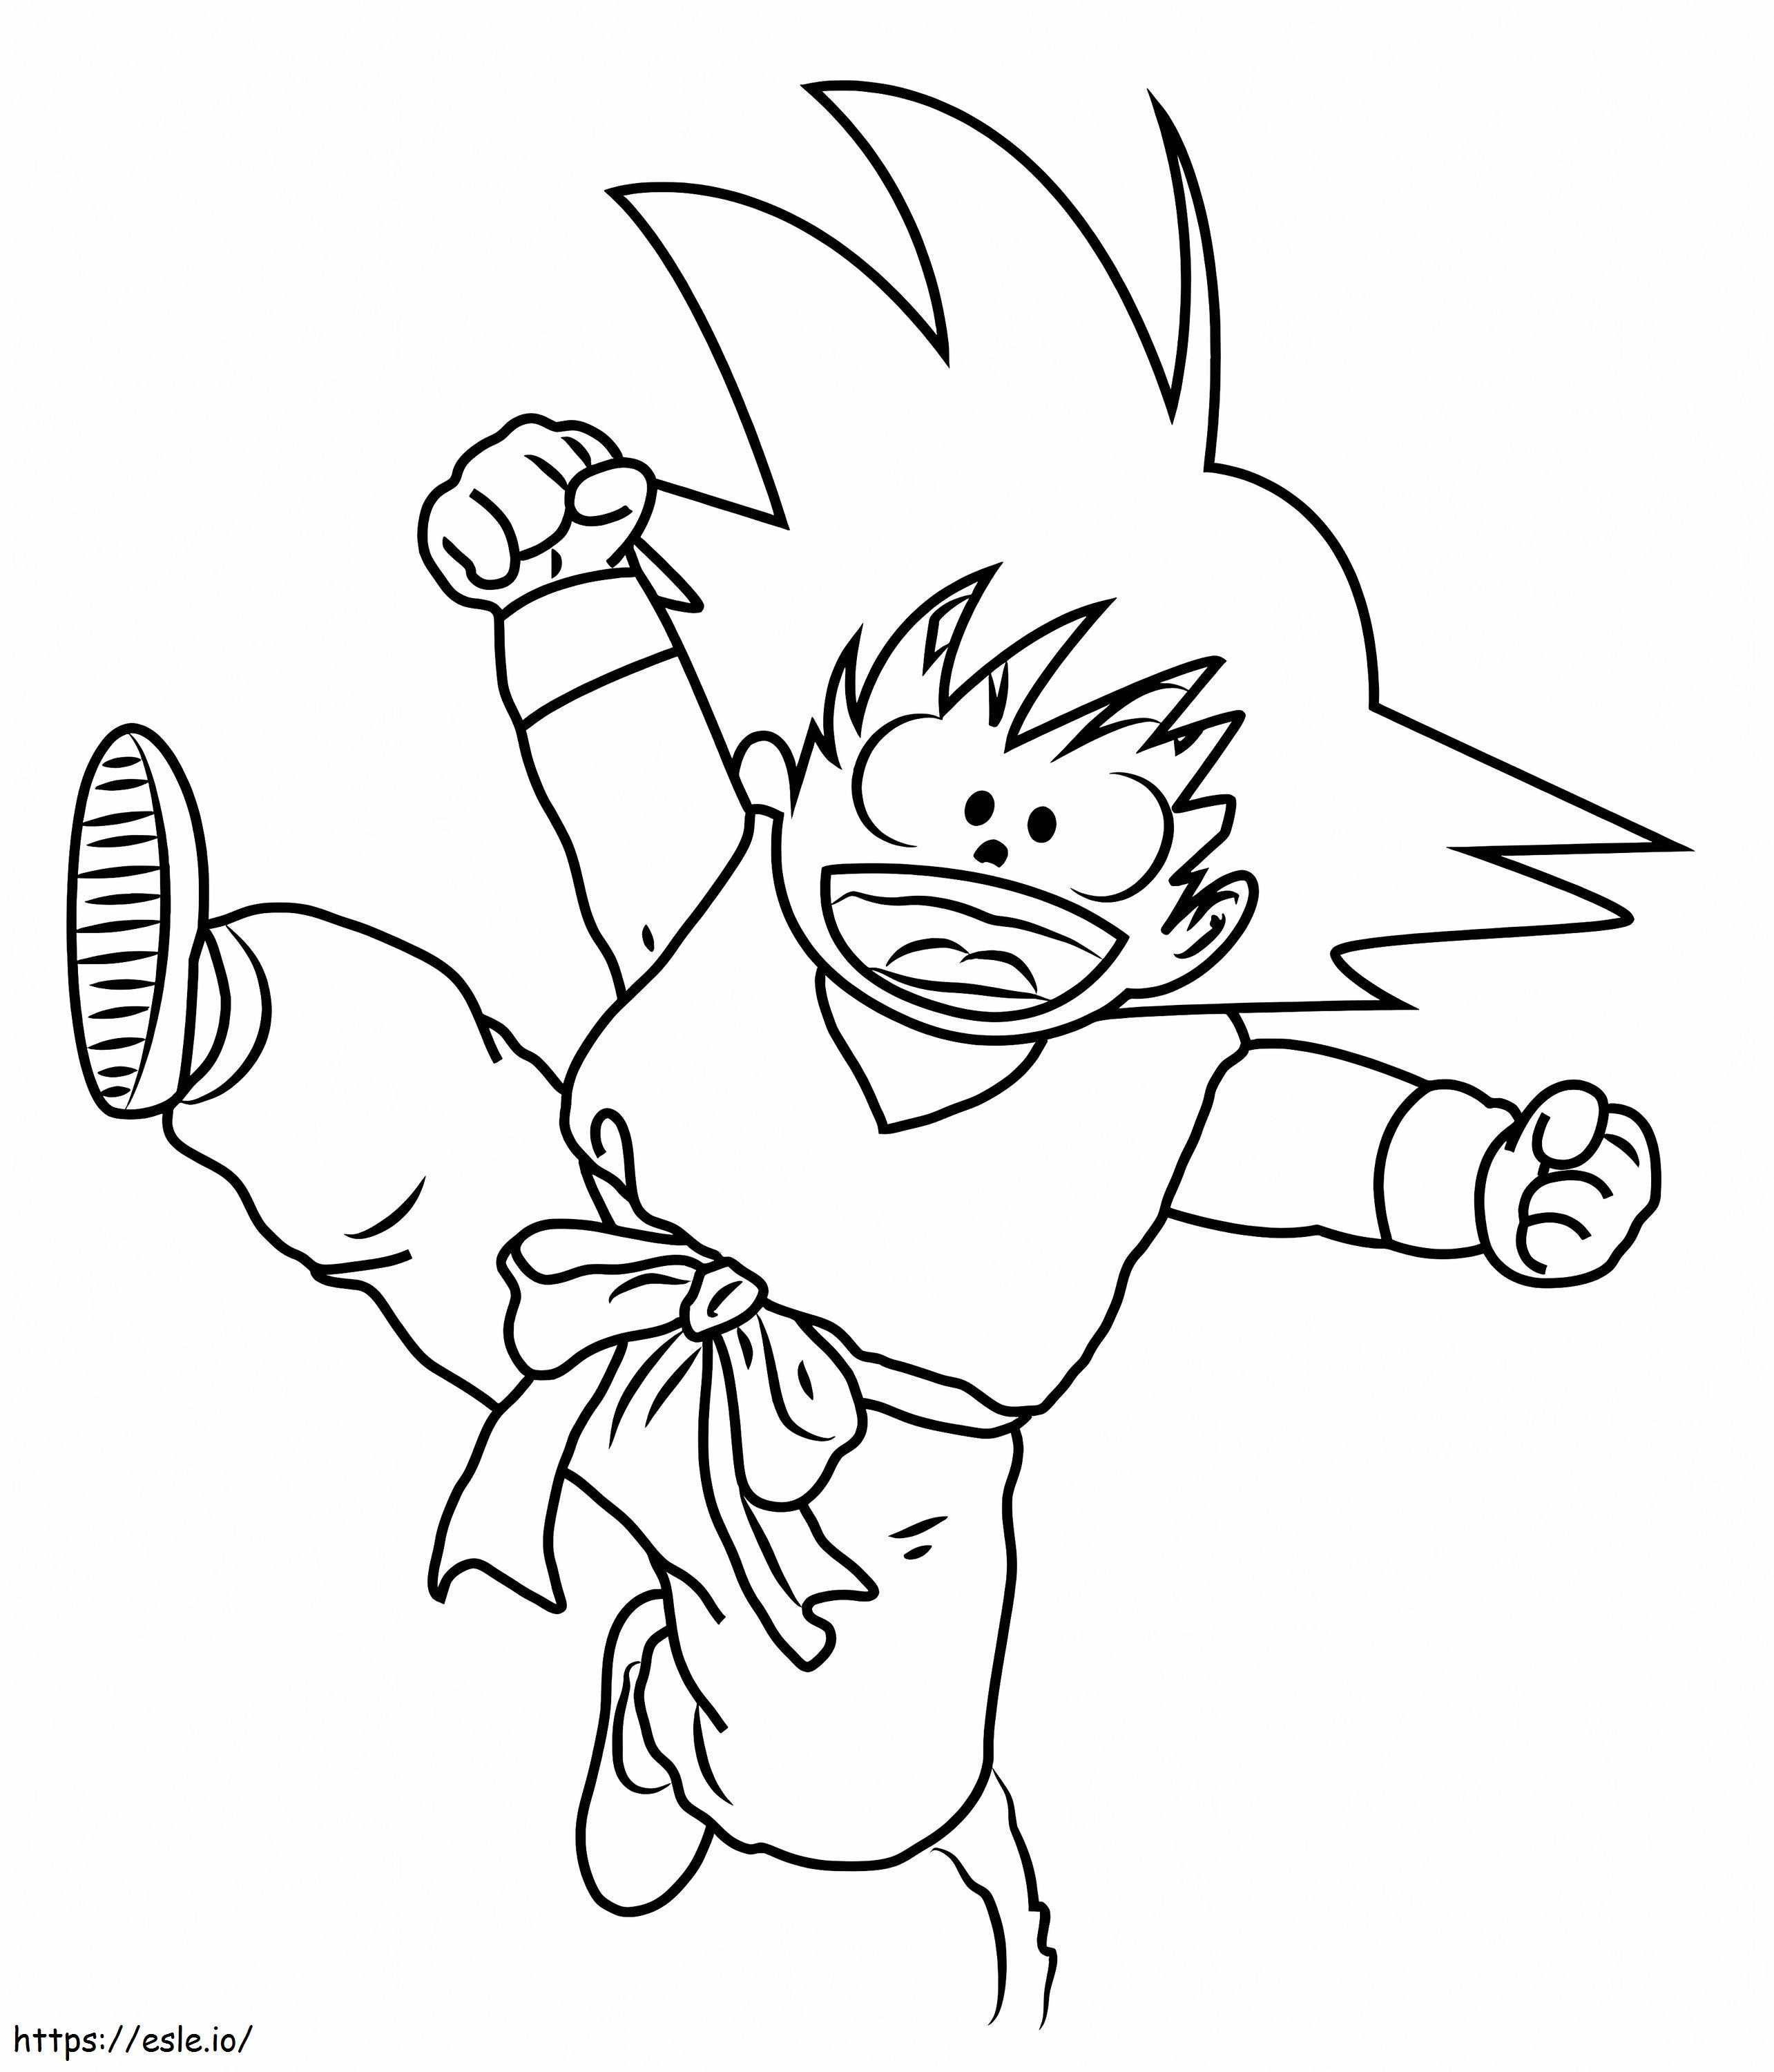 Divertente piccolo salto di Goku da colorare